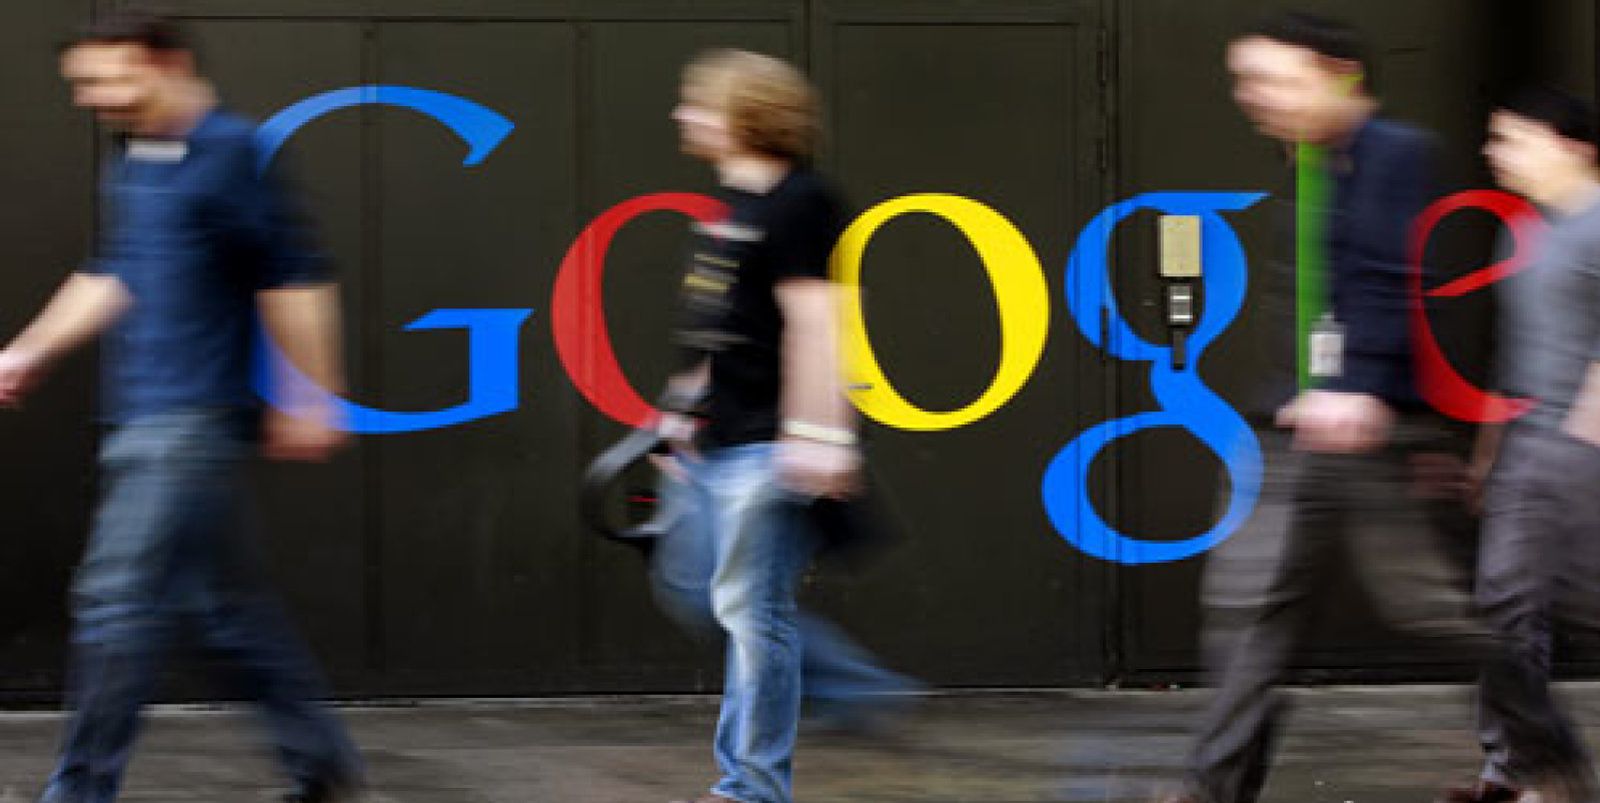 Foto: ¿Qué se supone que busca Google?